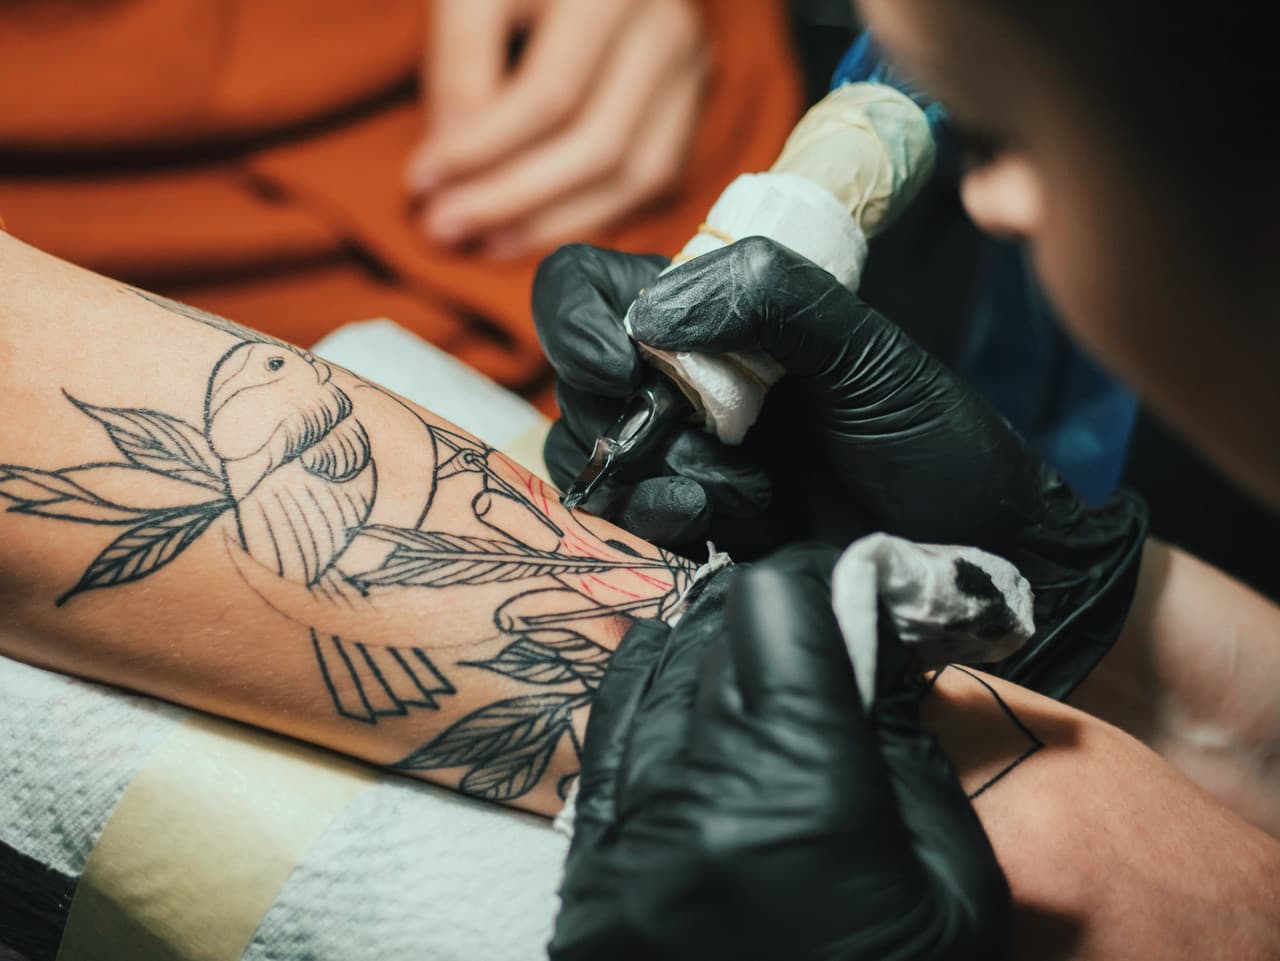 Tattoo Tips - Choosing a Tattoo Design